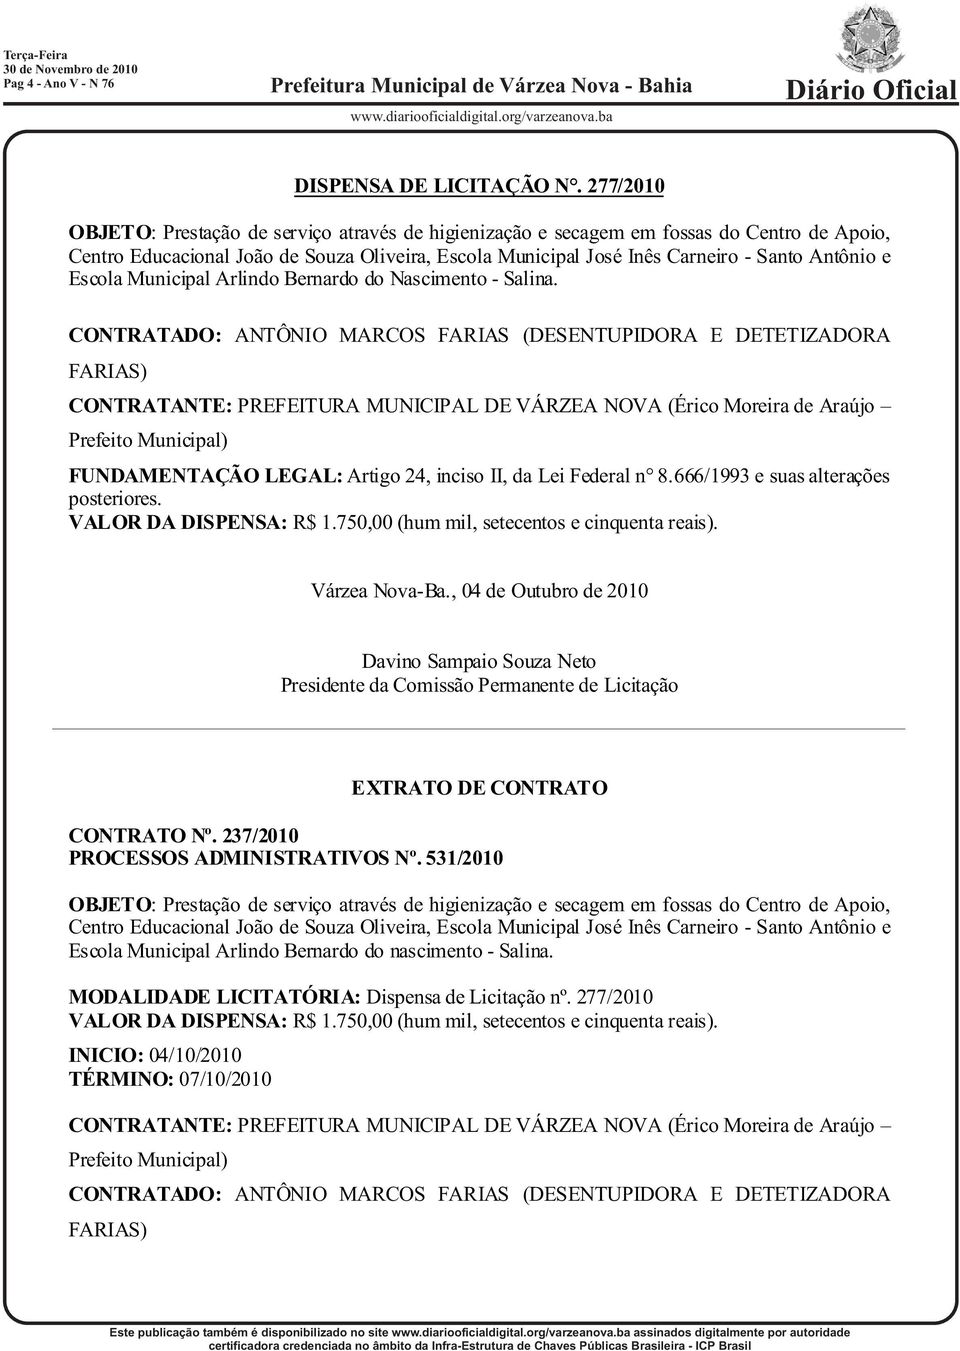 Escola Municipal Arlindo Bernardo do Nascimento - Salina. CONTRATADO: ANTÔNIO MARCOS FARIAS (DESENTUPIDORA E DETETIZADORA FARIAS) FUNDAMENTAÇÃO LEGAL: Artigo 24, inciso II, da Lei Federal n 8.